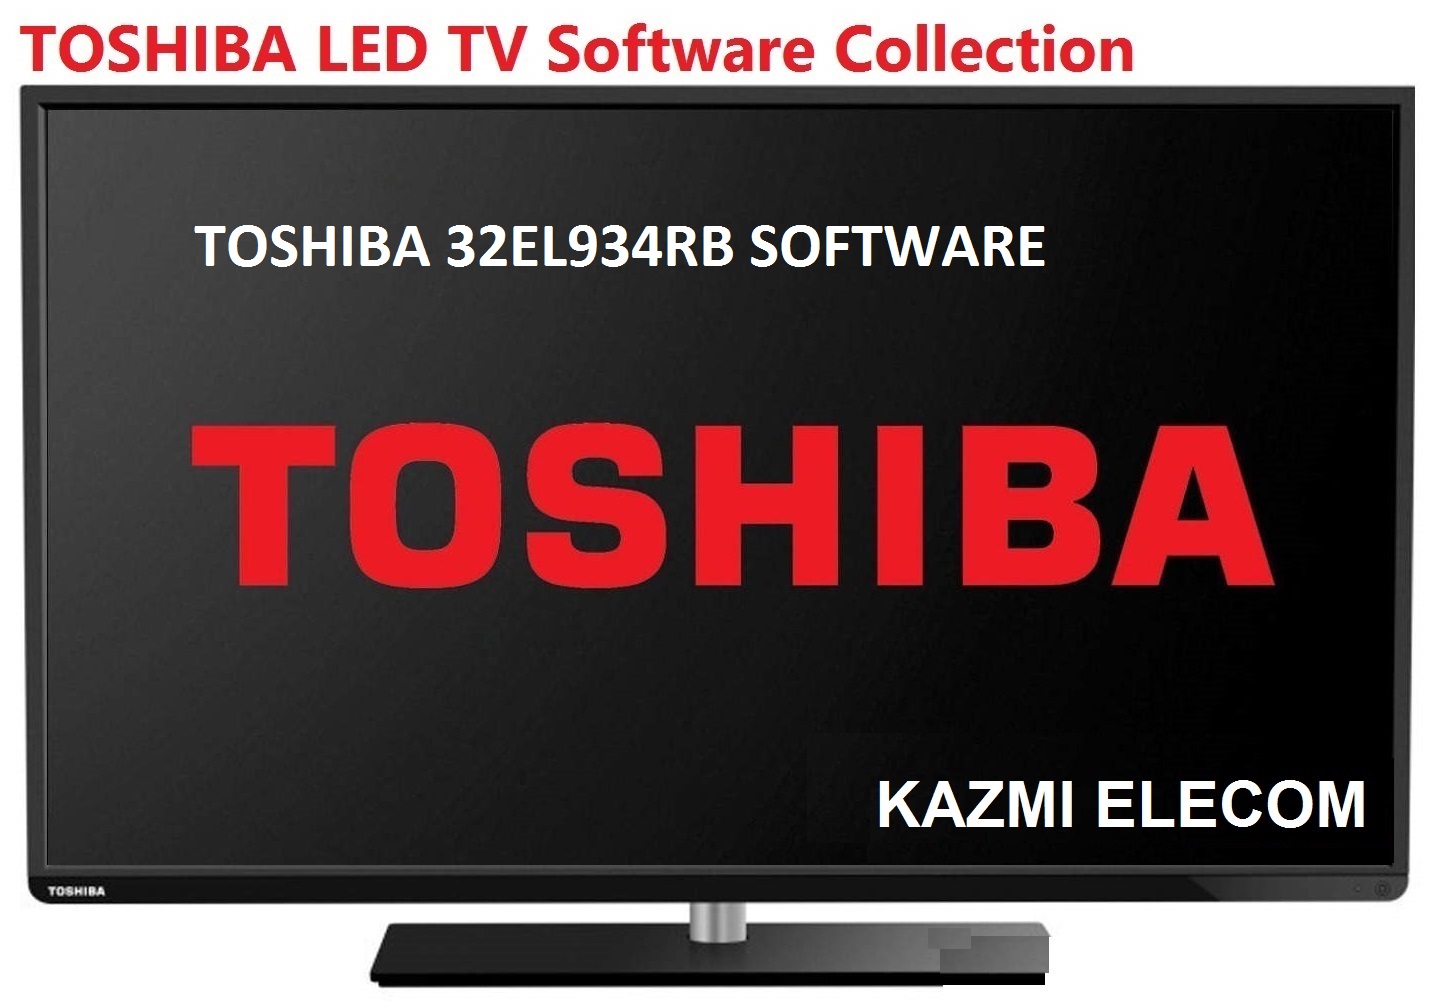 Toshiba 32El934Rb